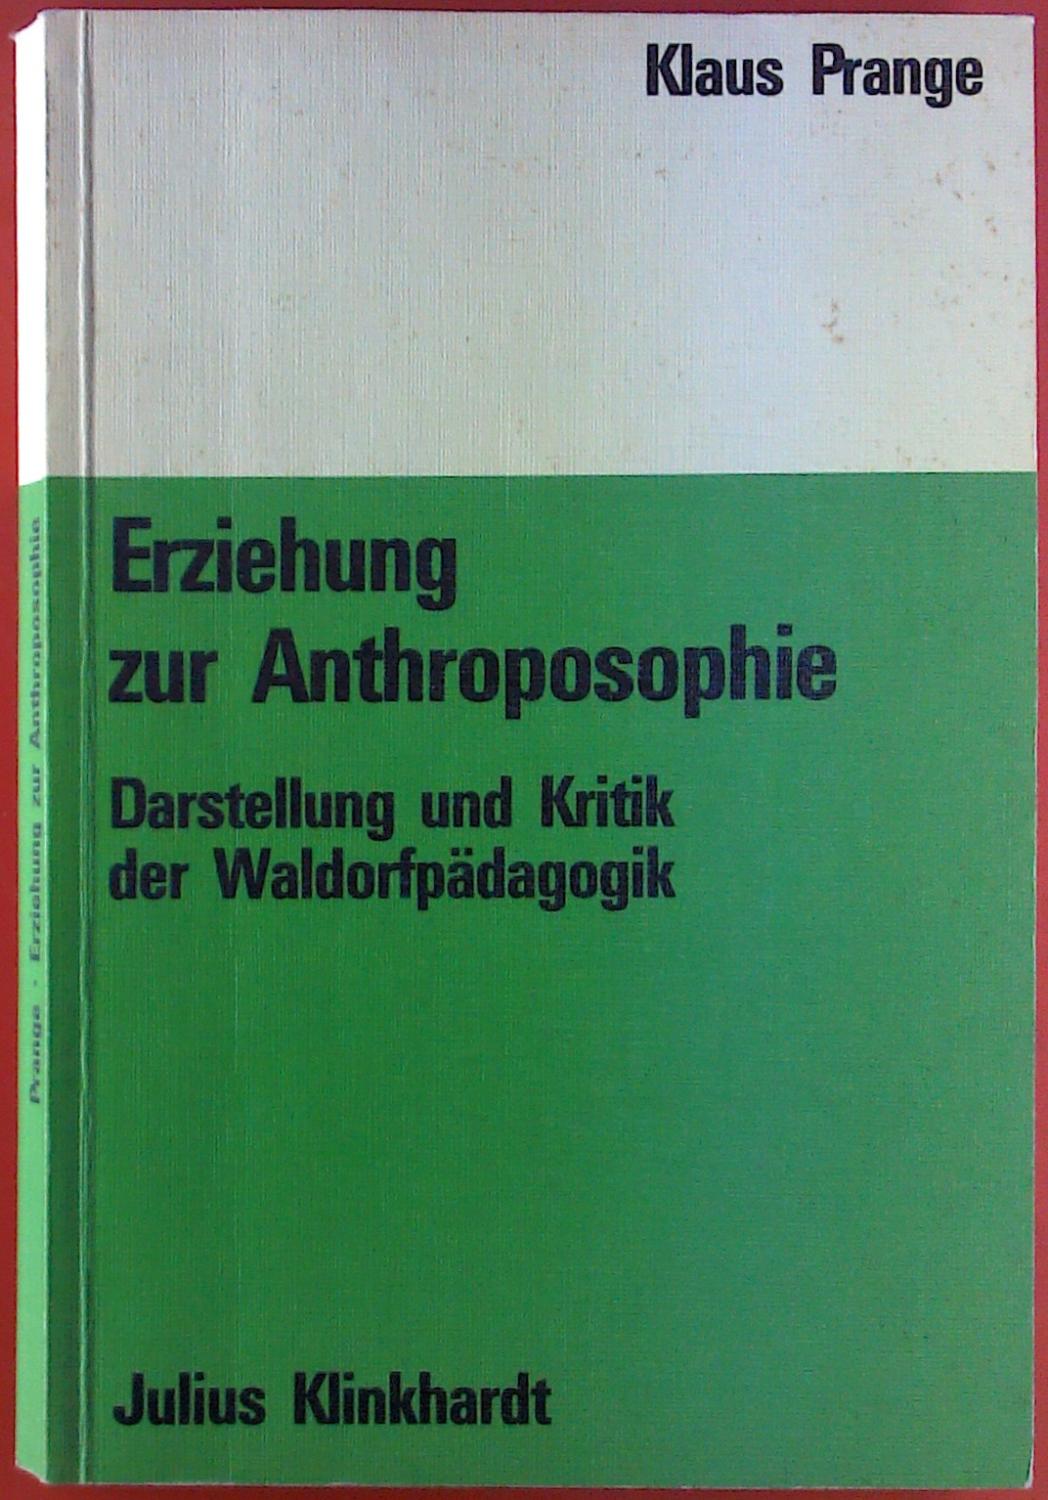 Erziehung zur Anthroposophie. Darstellung und Kritik der Waldorfpädagogik